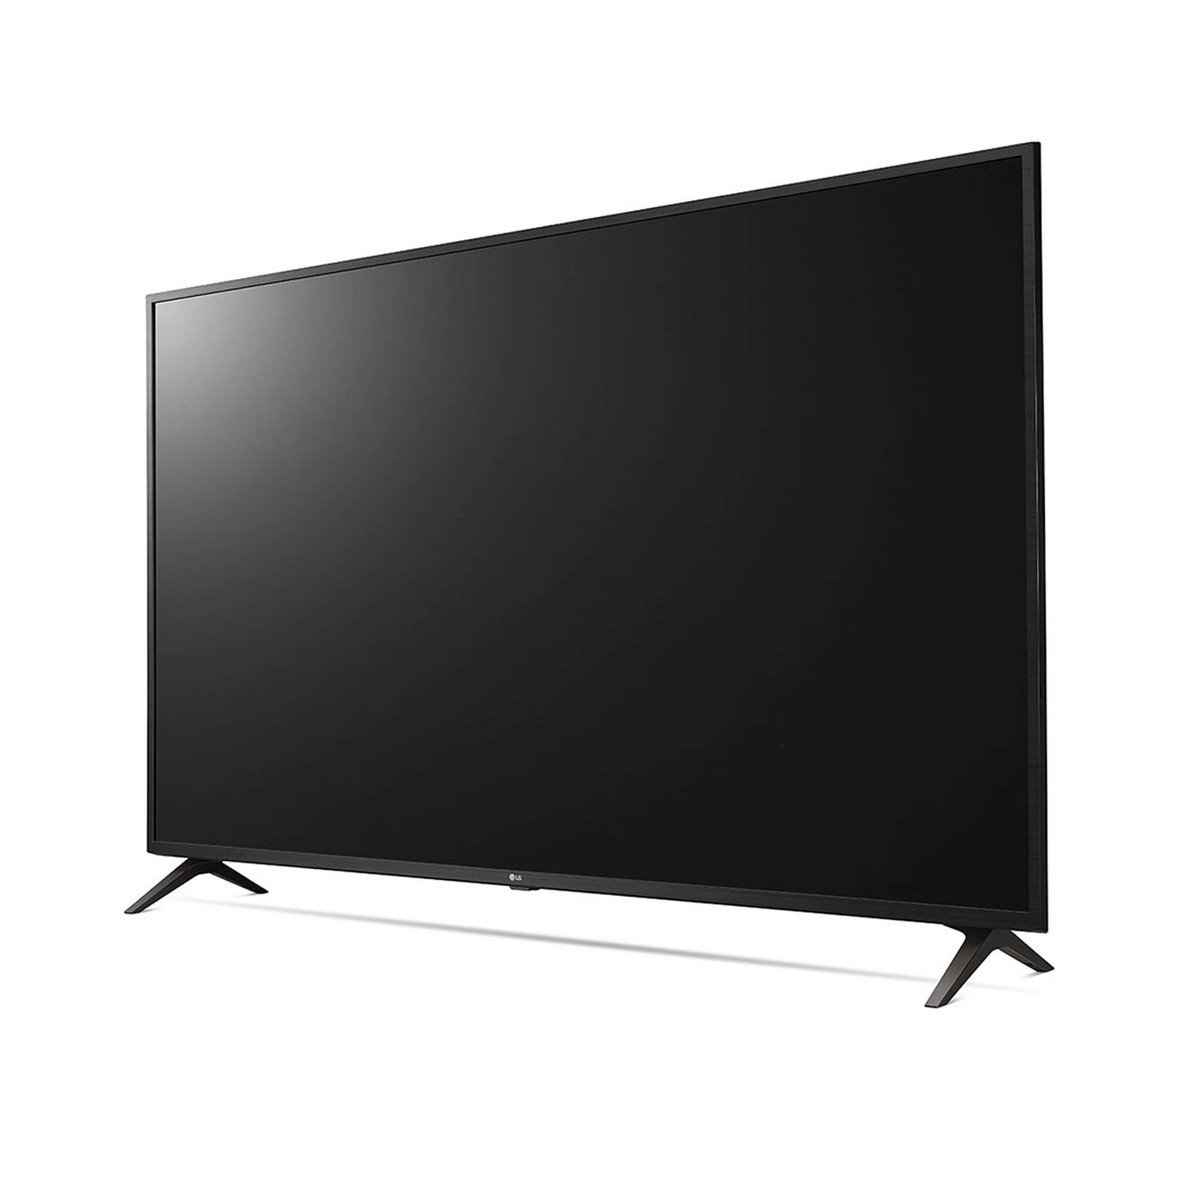 LG Ultra HD Smart LED TV 55UM7340PVA 55"